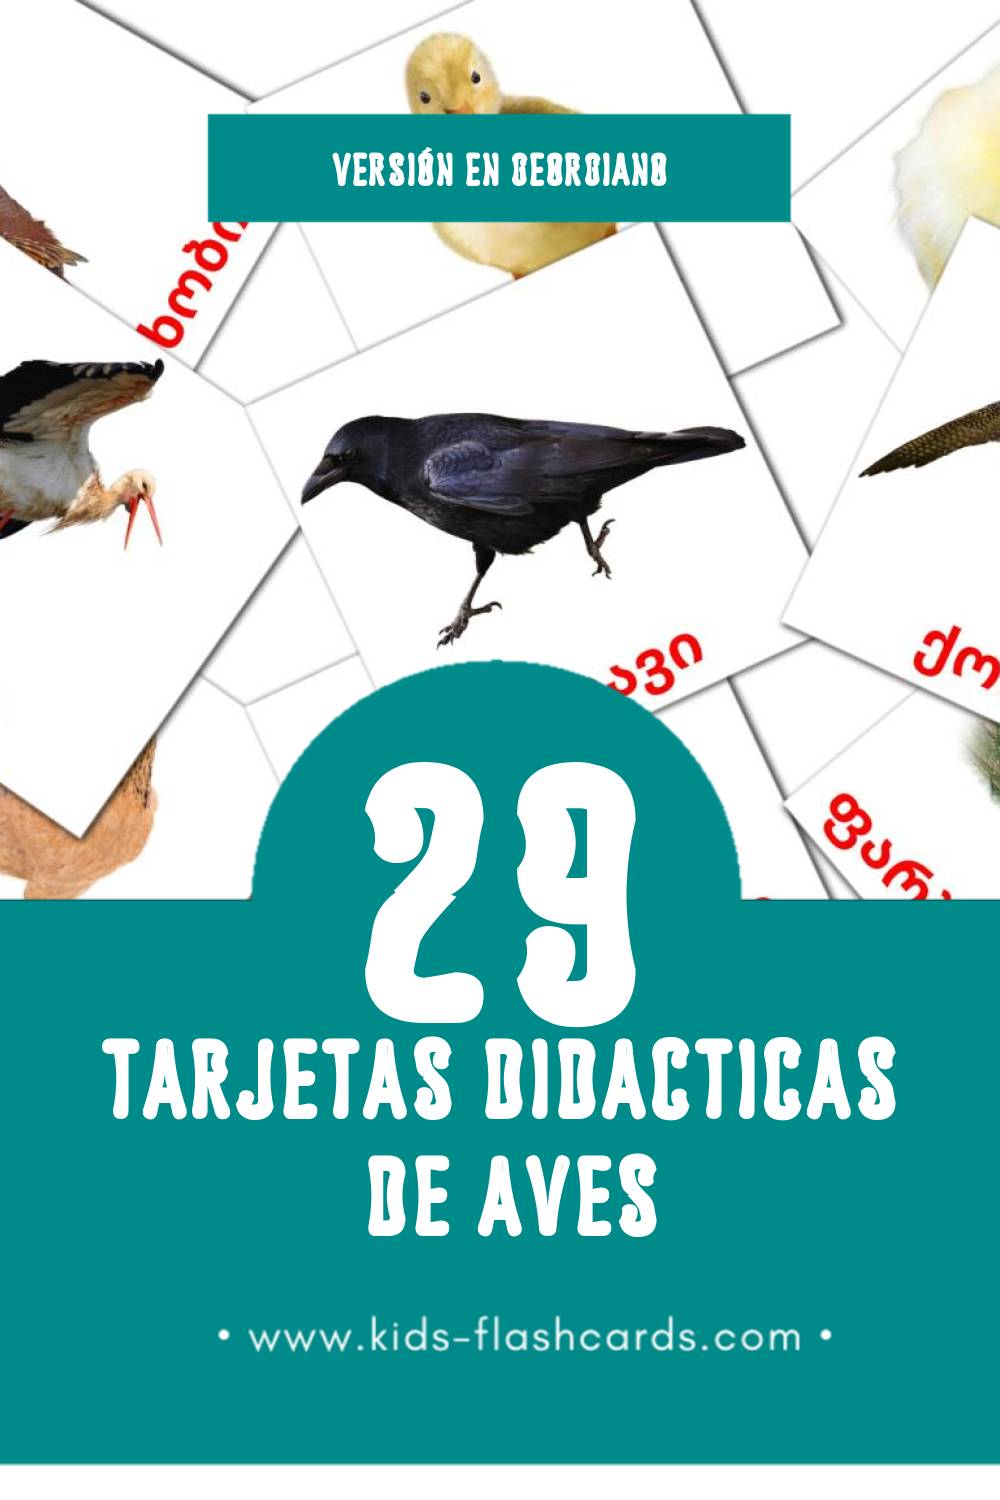 Tarjetas visuales de ფრინველები para niños pequeños (29 tarjetas en Georgiano)